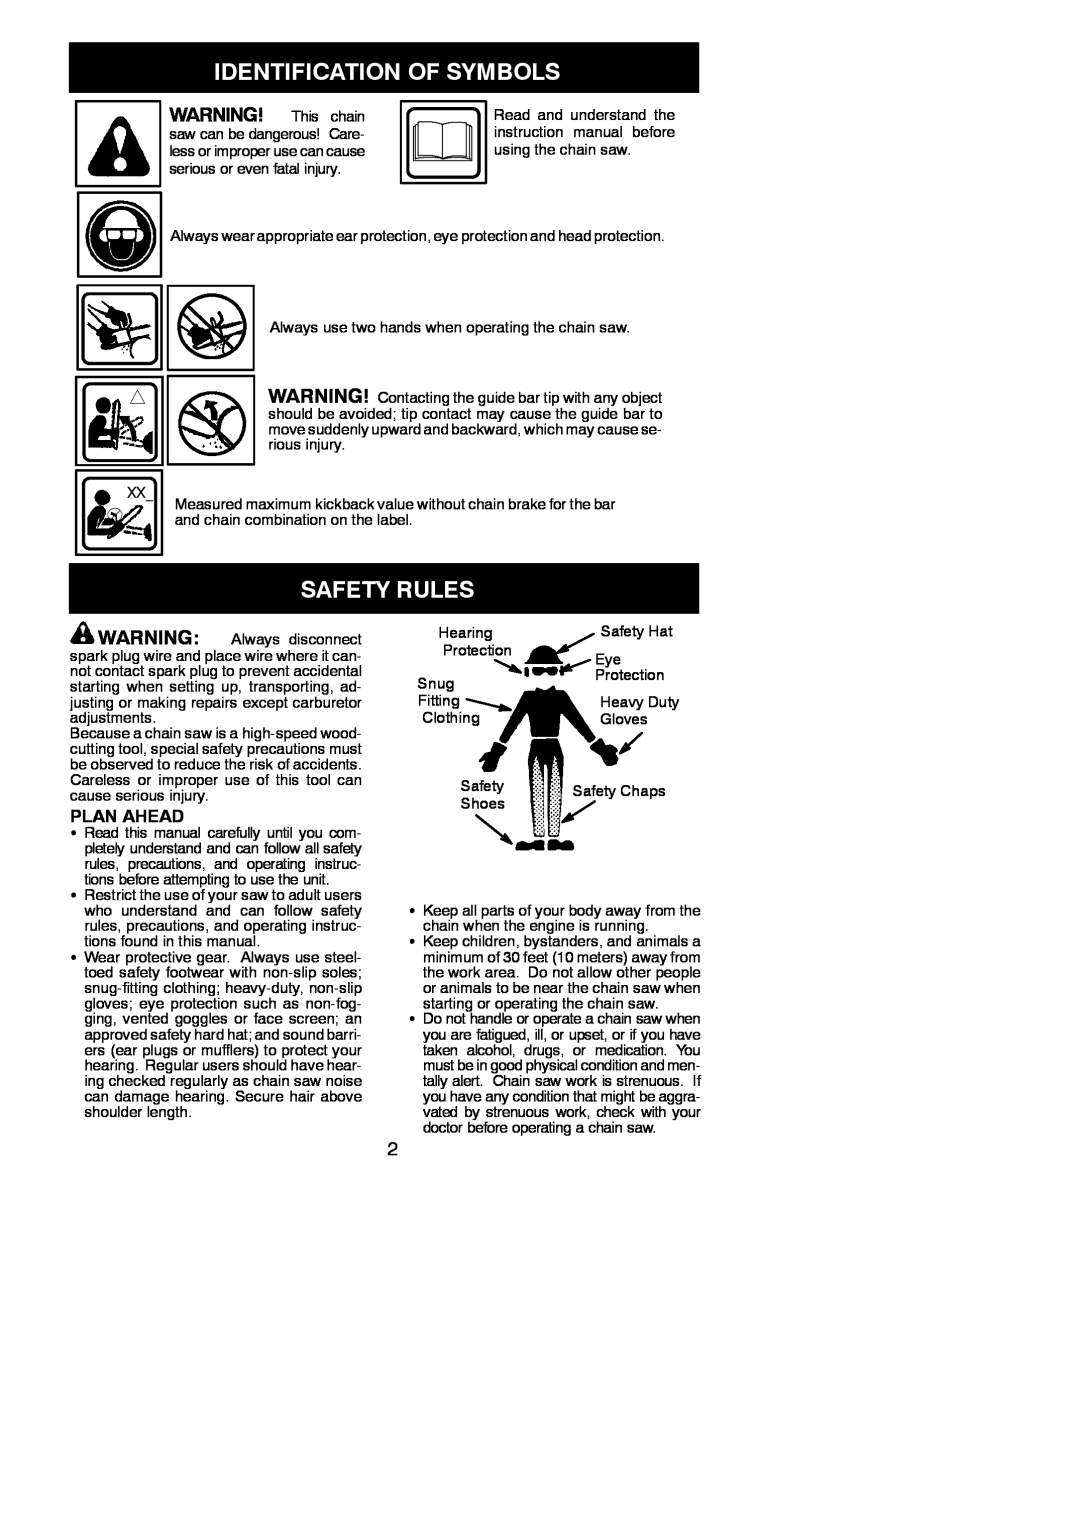 Poulan PP3816 AV, PP4218 AV instruction manual Identification Of Symbols, Safety Rules, Plan Ahead 